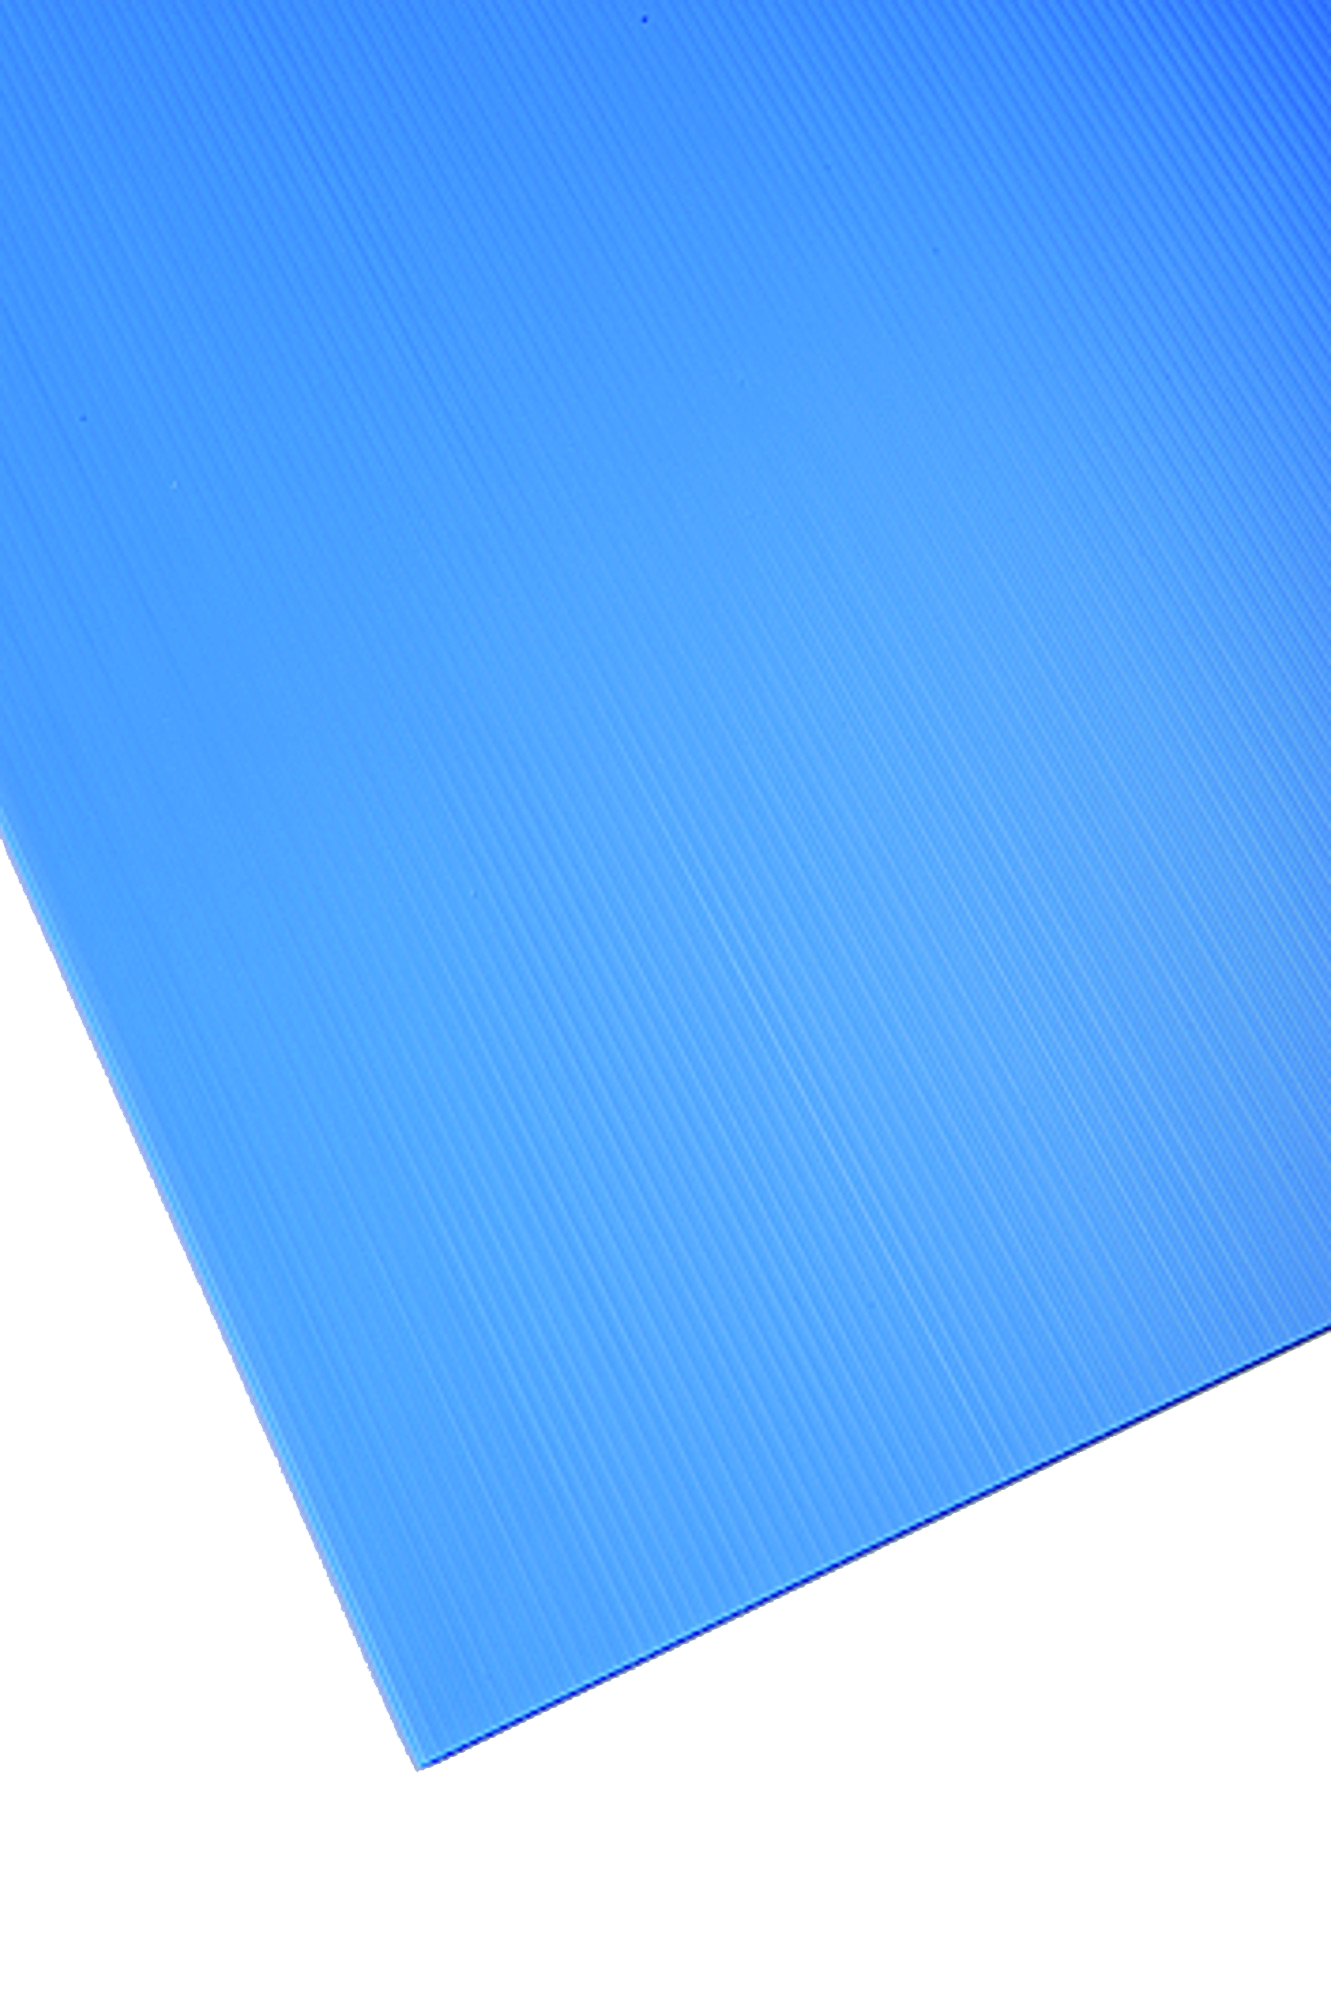 Placa de polipropileno azul opaco de 2.5 mm de grosor y 150x50cm